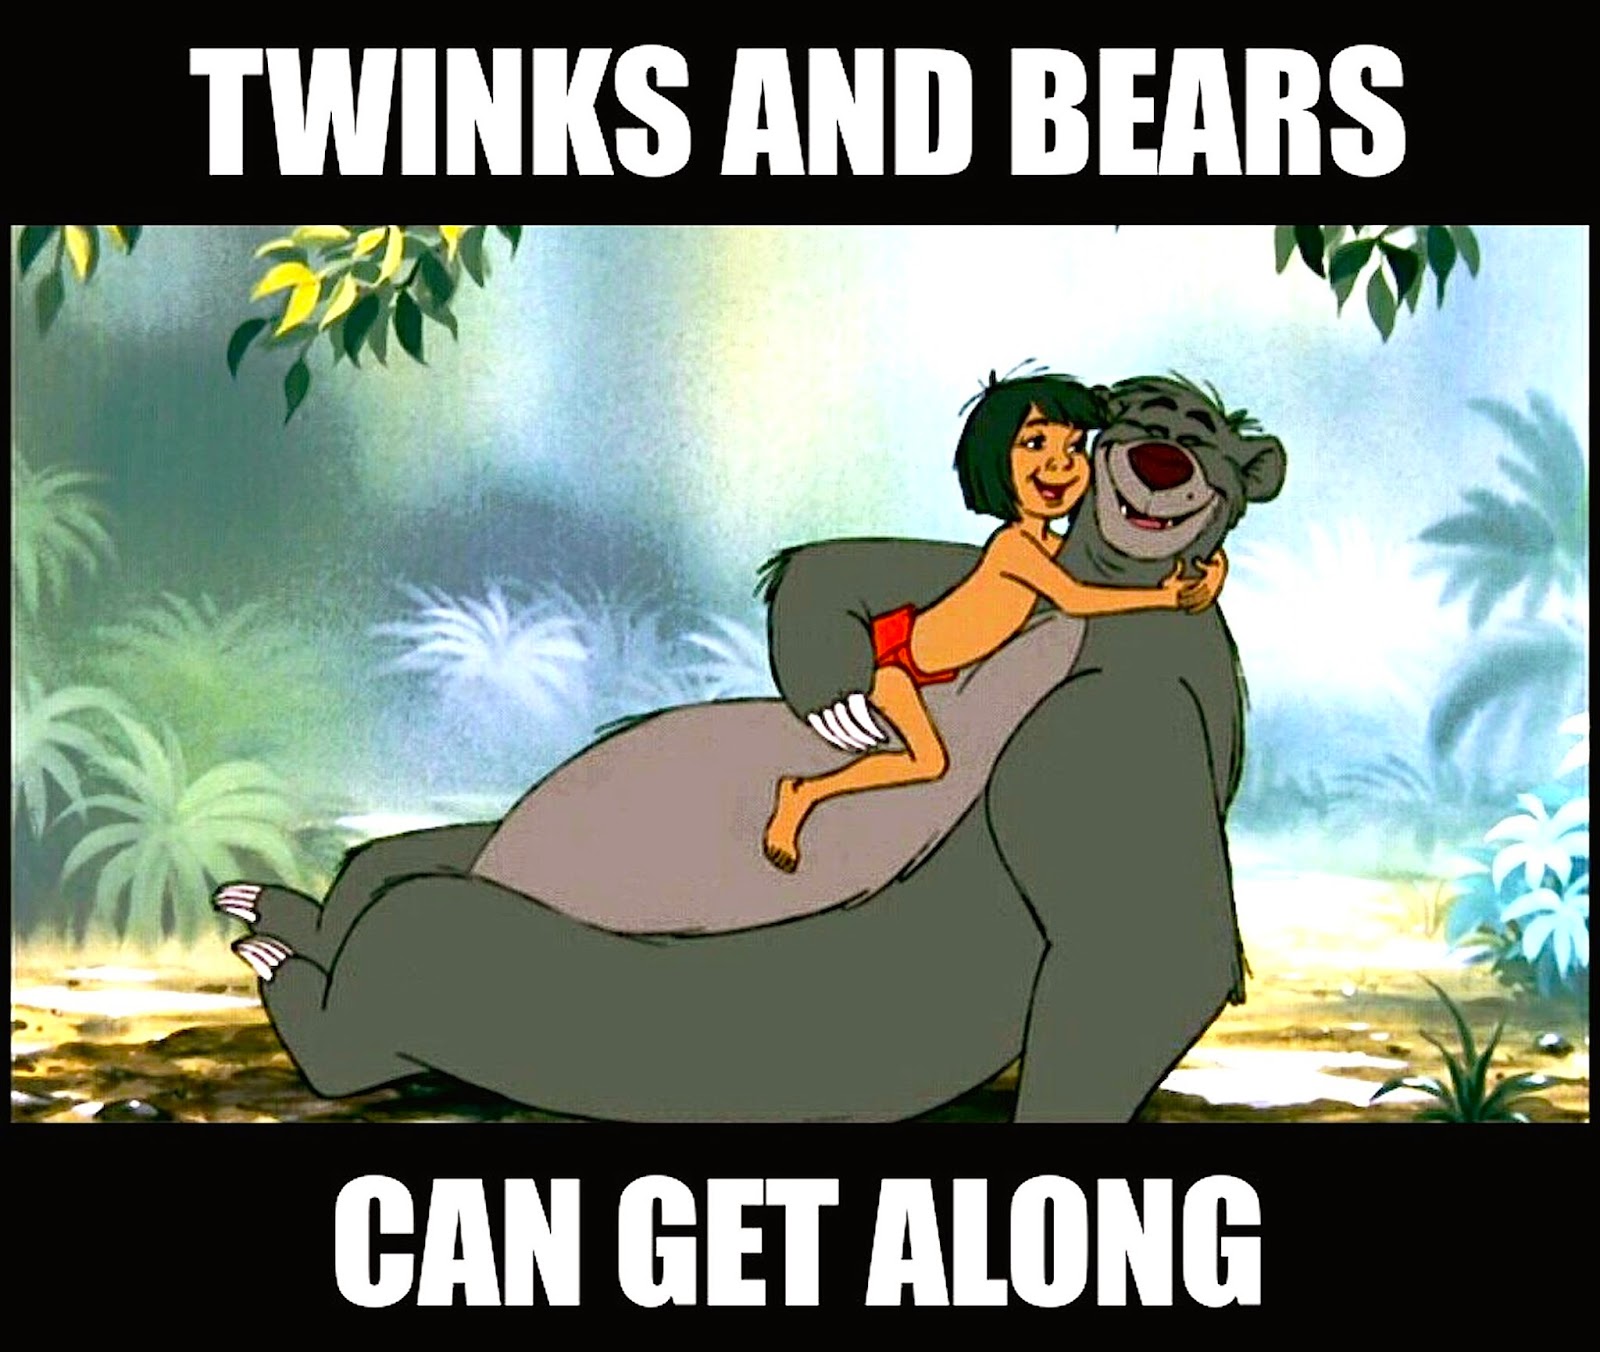 Twinks vs bears